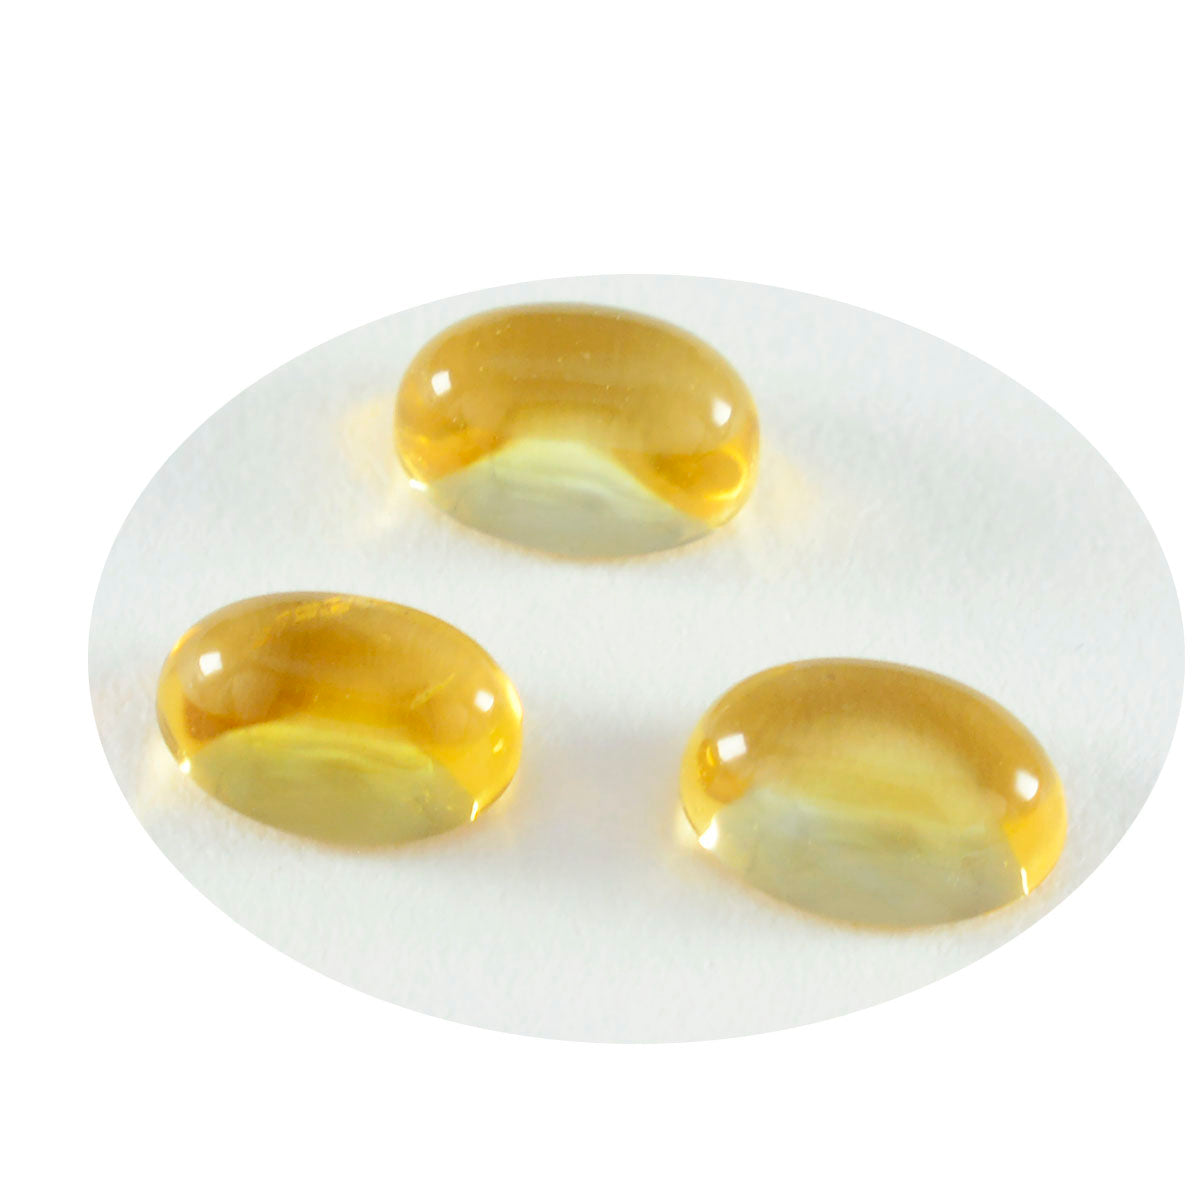 Riyogems 1 Stück gelber Citrin-Cabochon, 8 x 10 mm, ovale Form, schöner Qualitätsstein